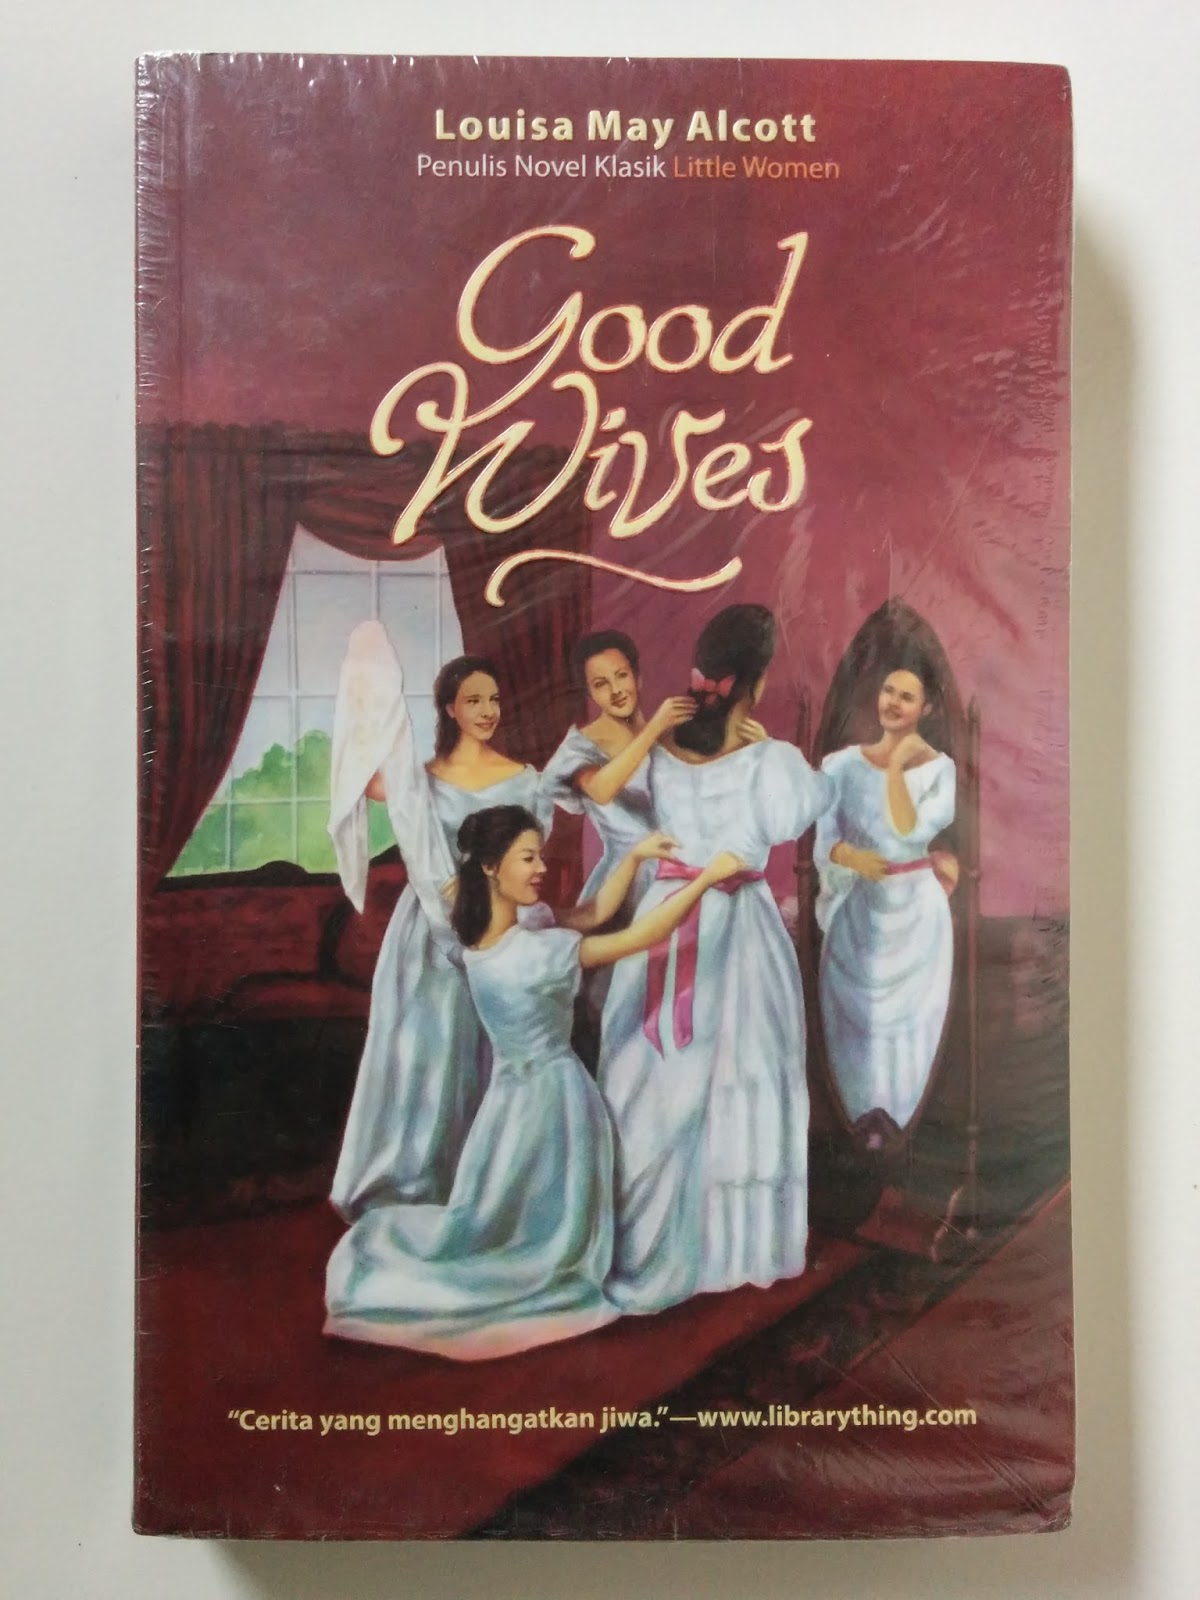 The wife book. Little women & good wives книга. Хорошие жены обложка книги.